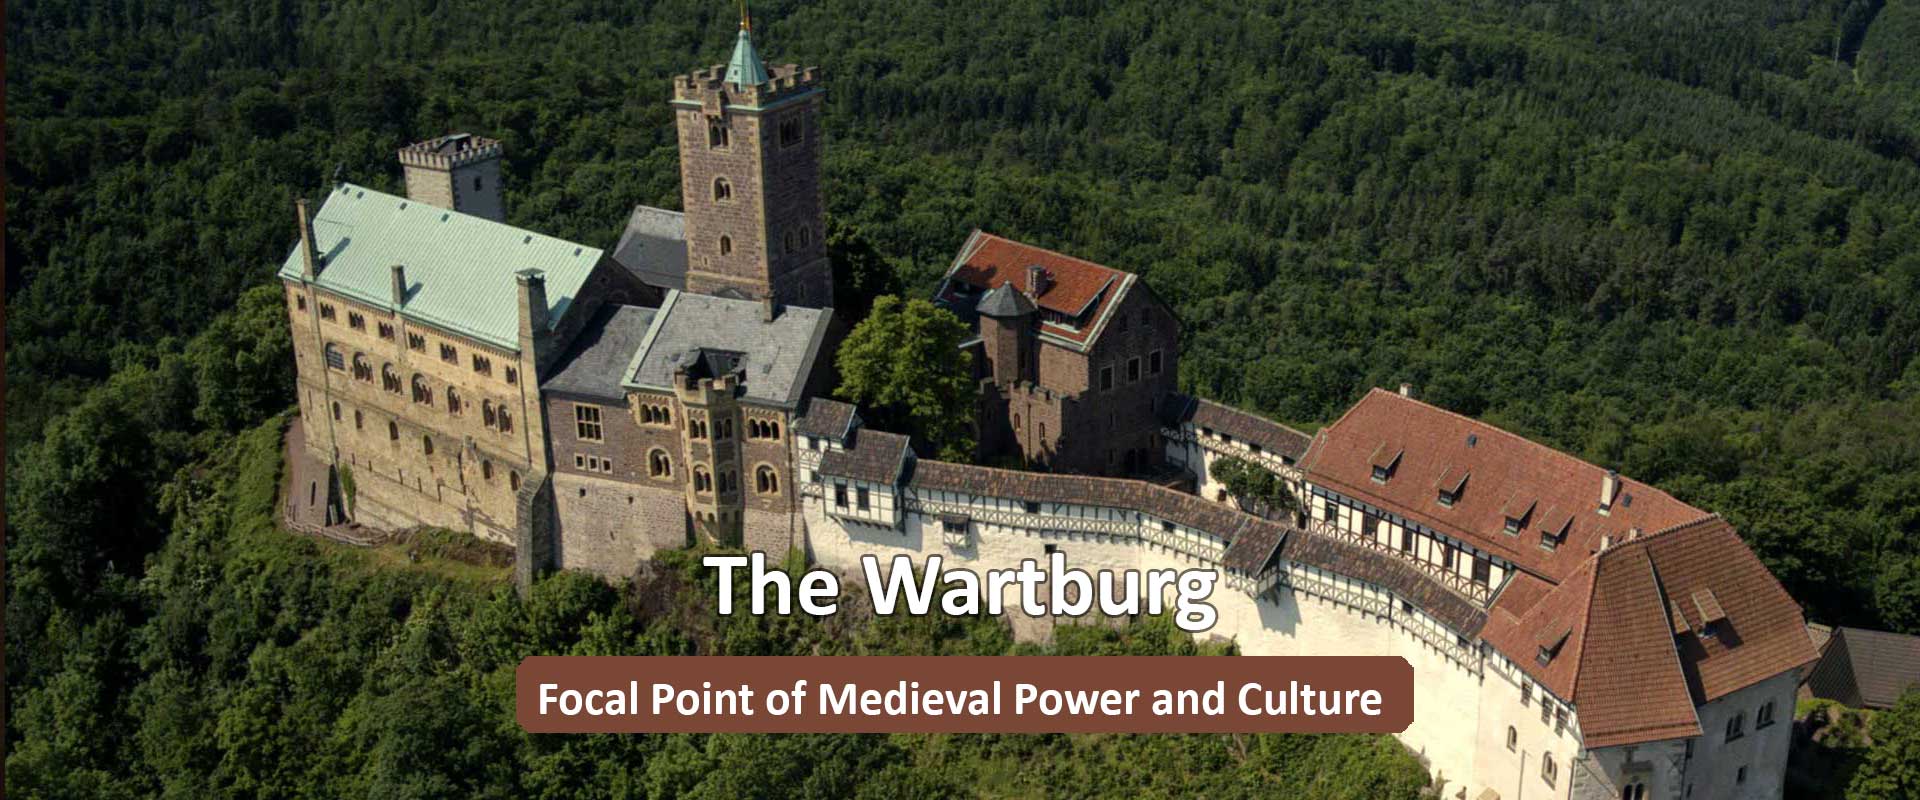 The Wartburg